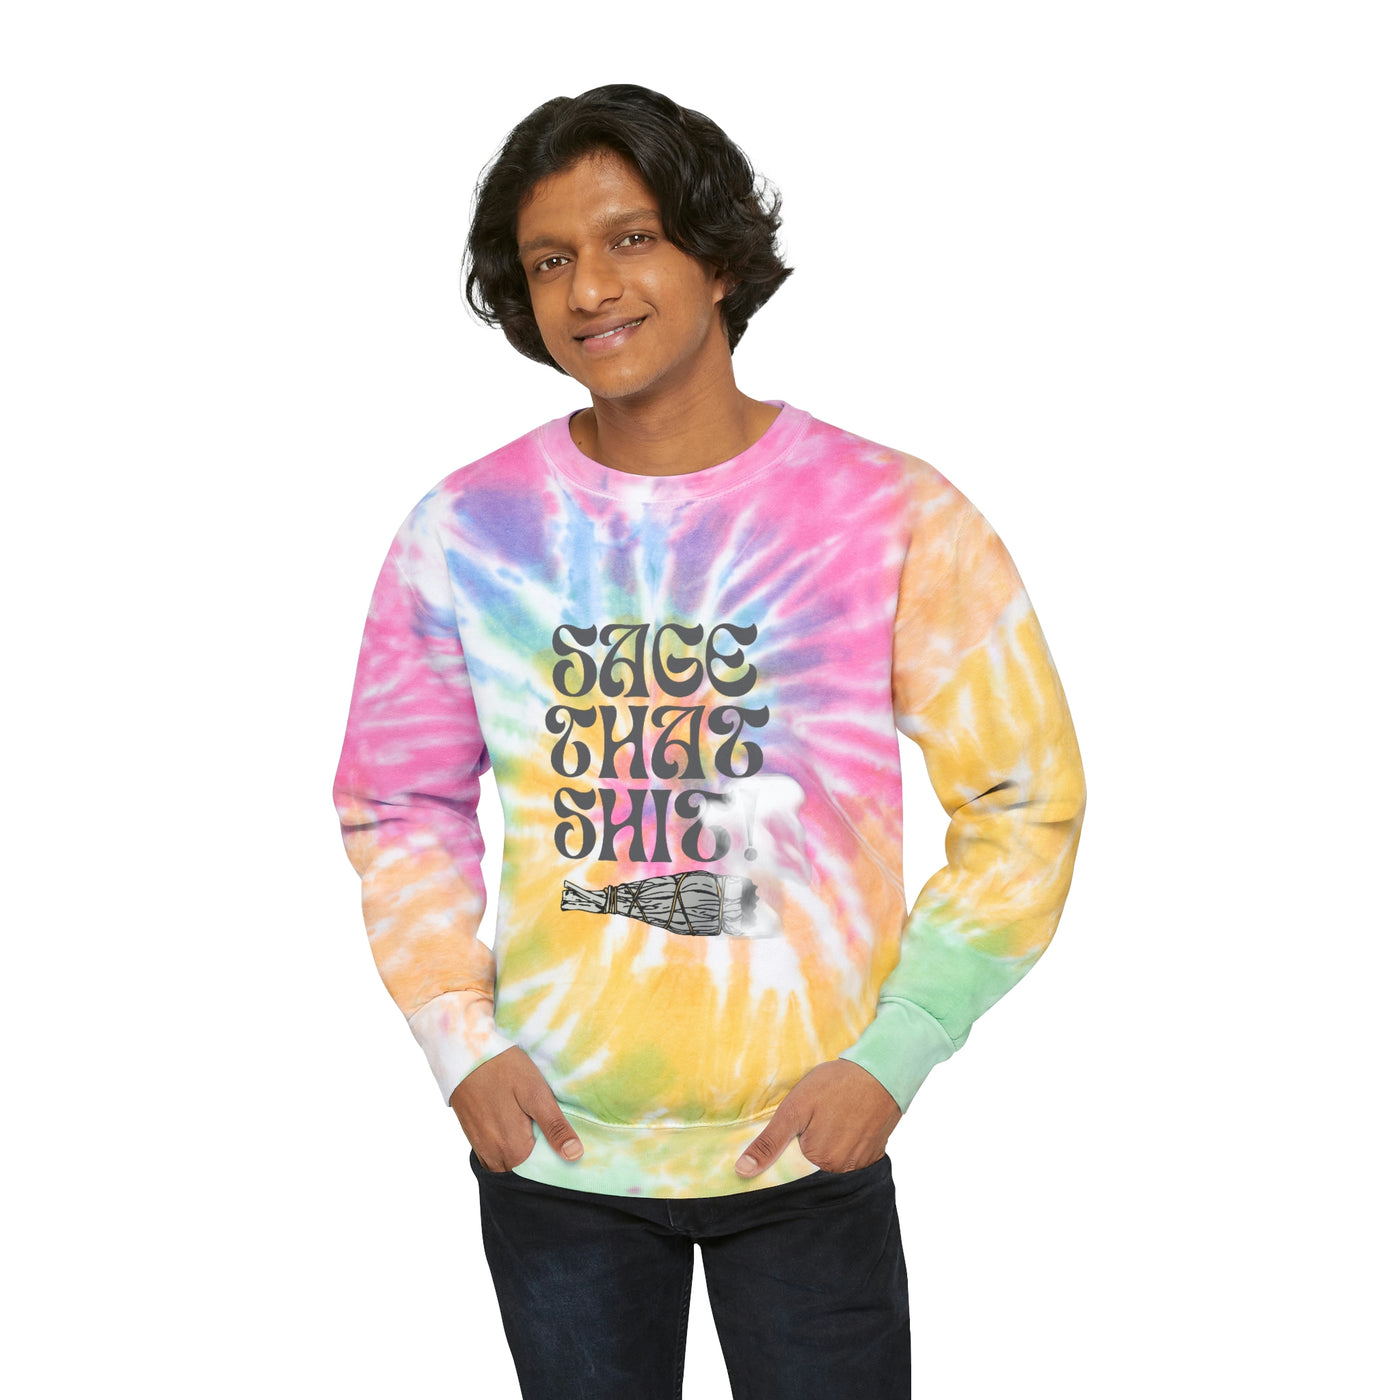 Sage That Shit Unisex Tie-Dye Sweatshirt